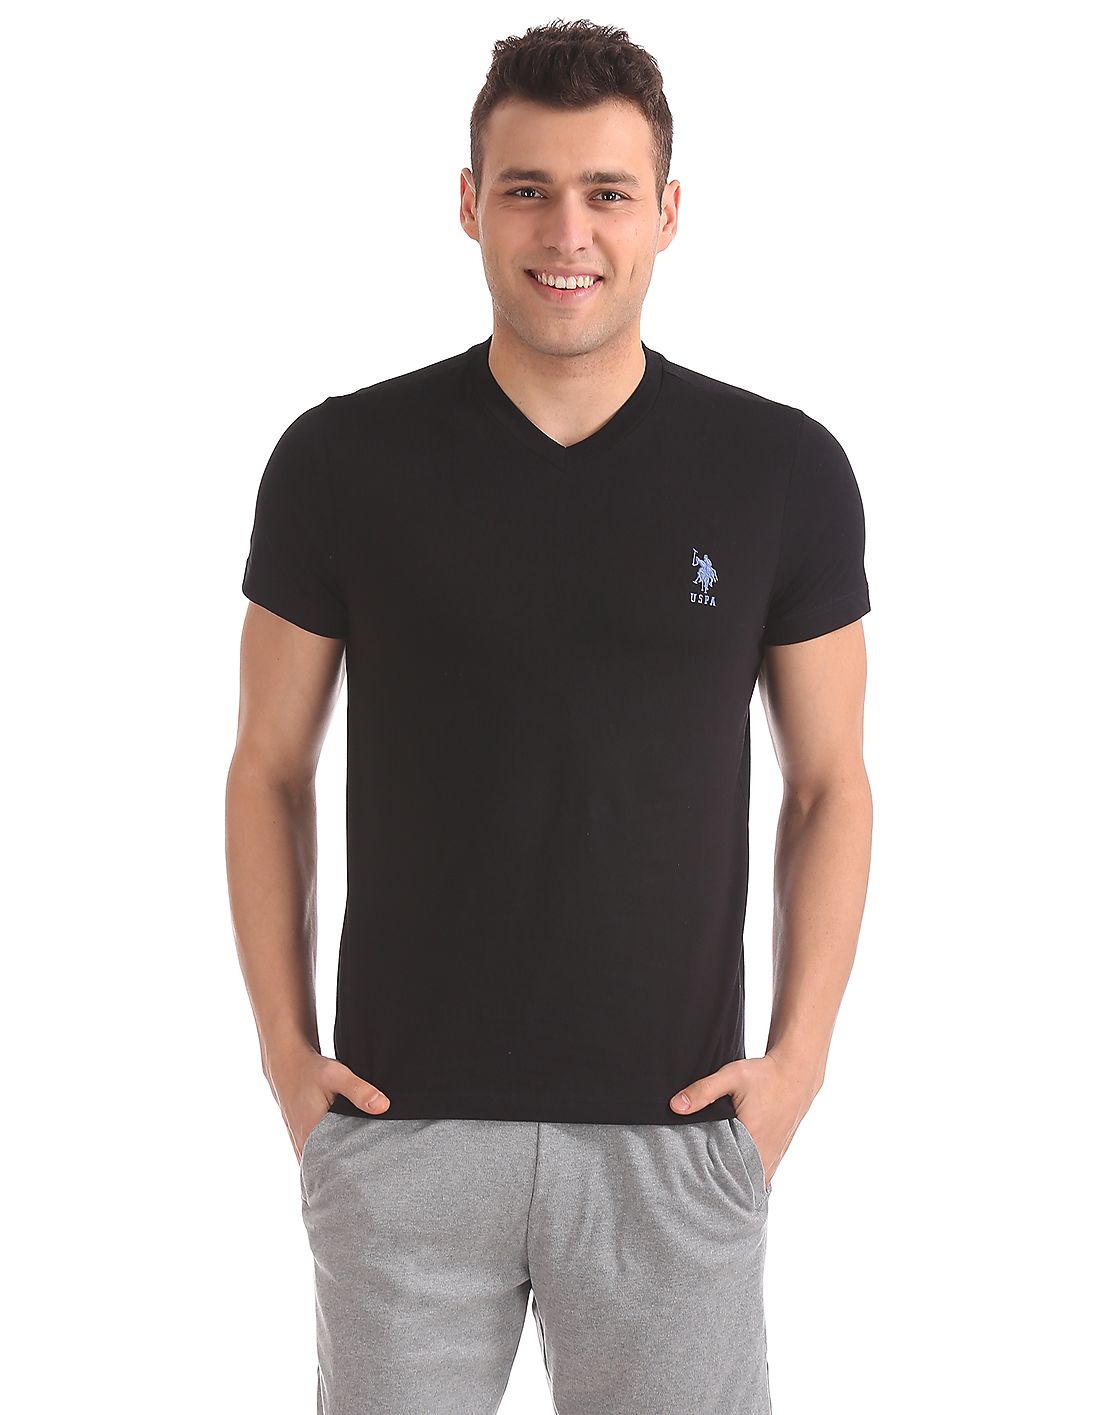 U.S. Polo Assn. Short Sleeve V-Neck T-Shirt Black for men - Stilento